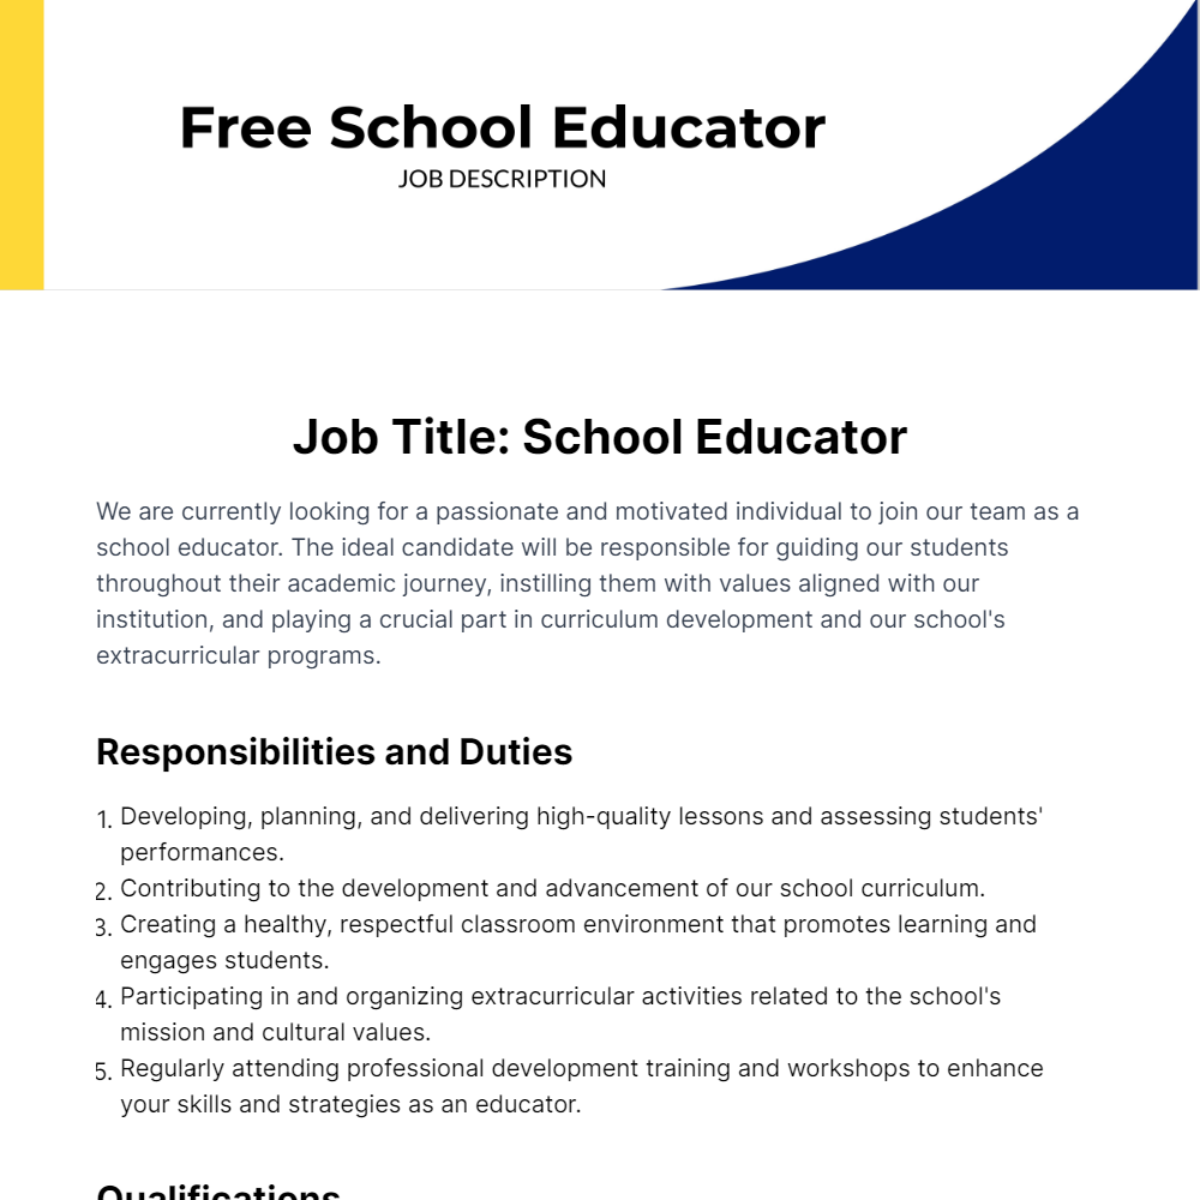 School Educator Job Description Template